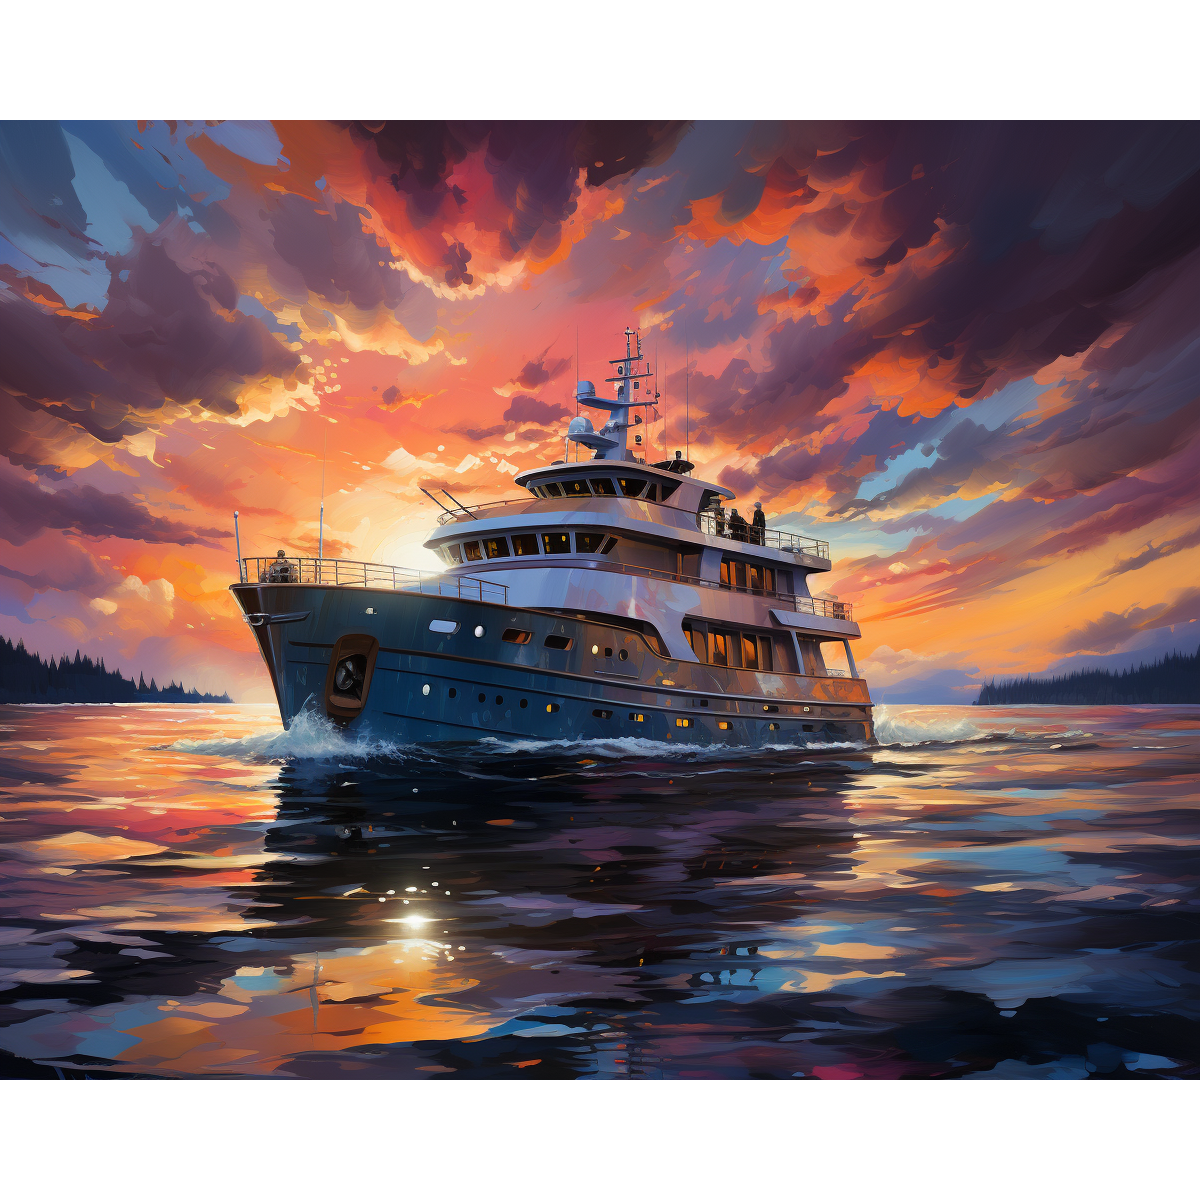 Lo yacht scintillante del tramonto